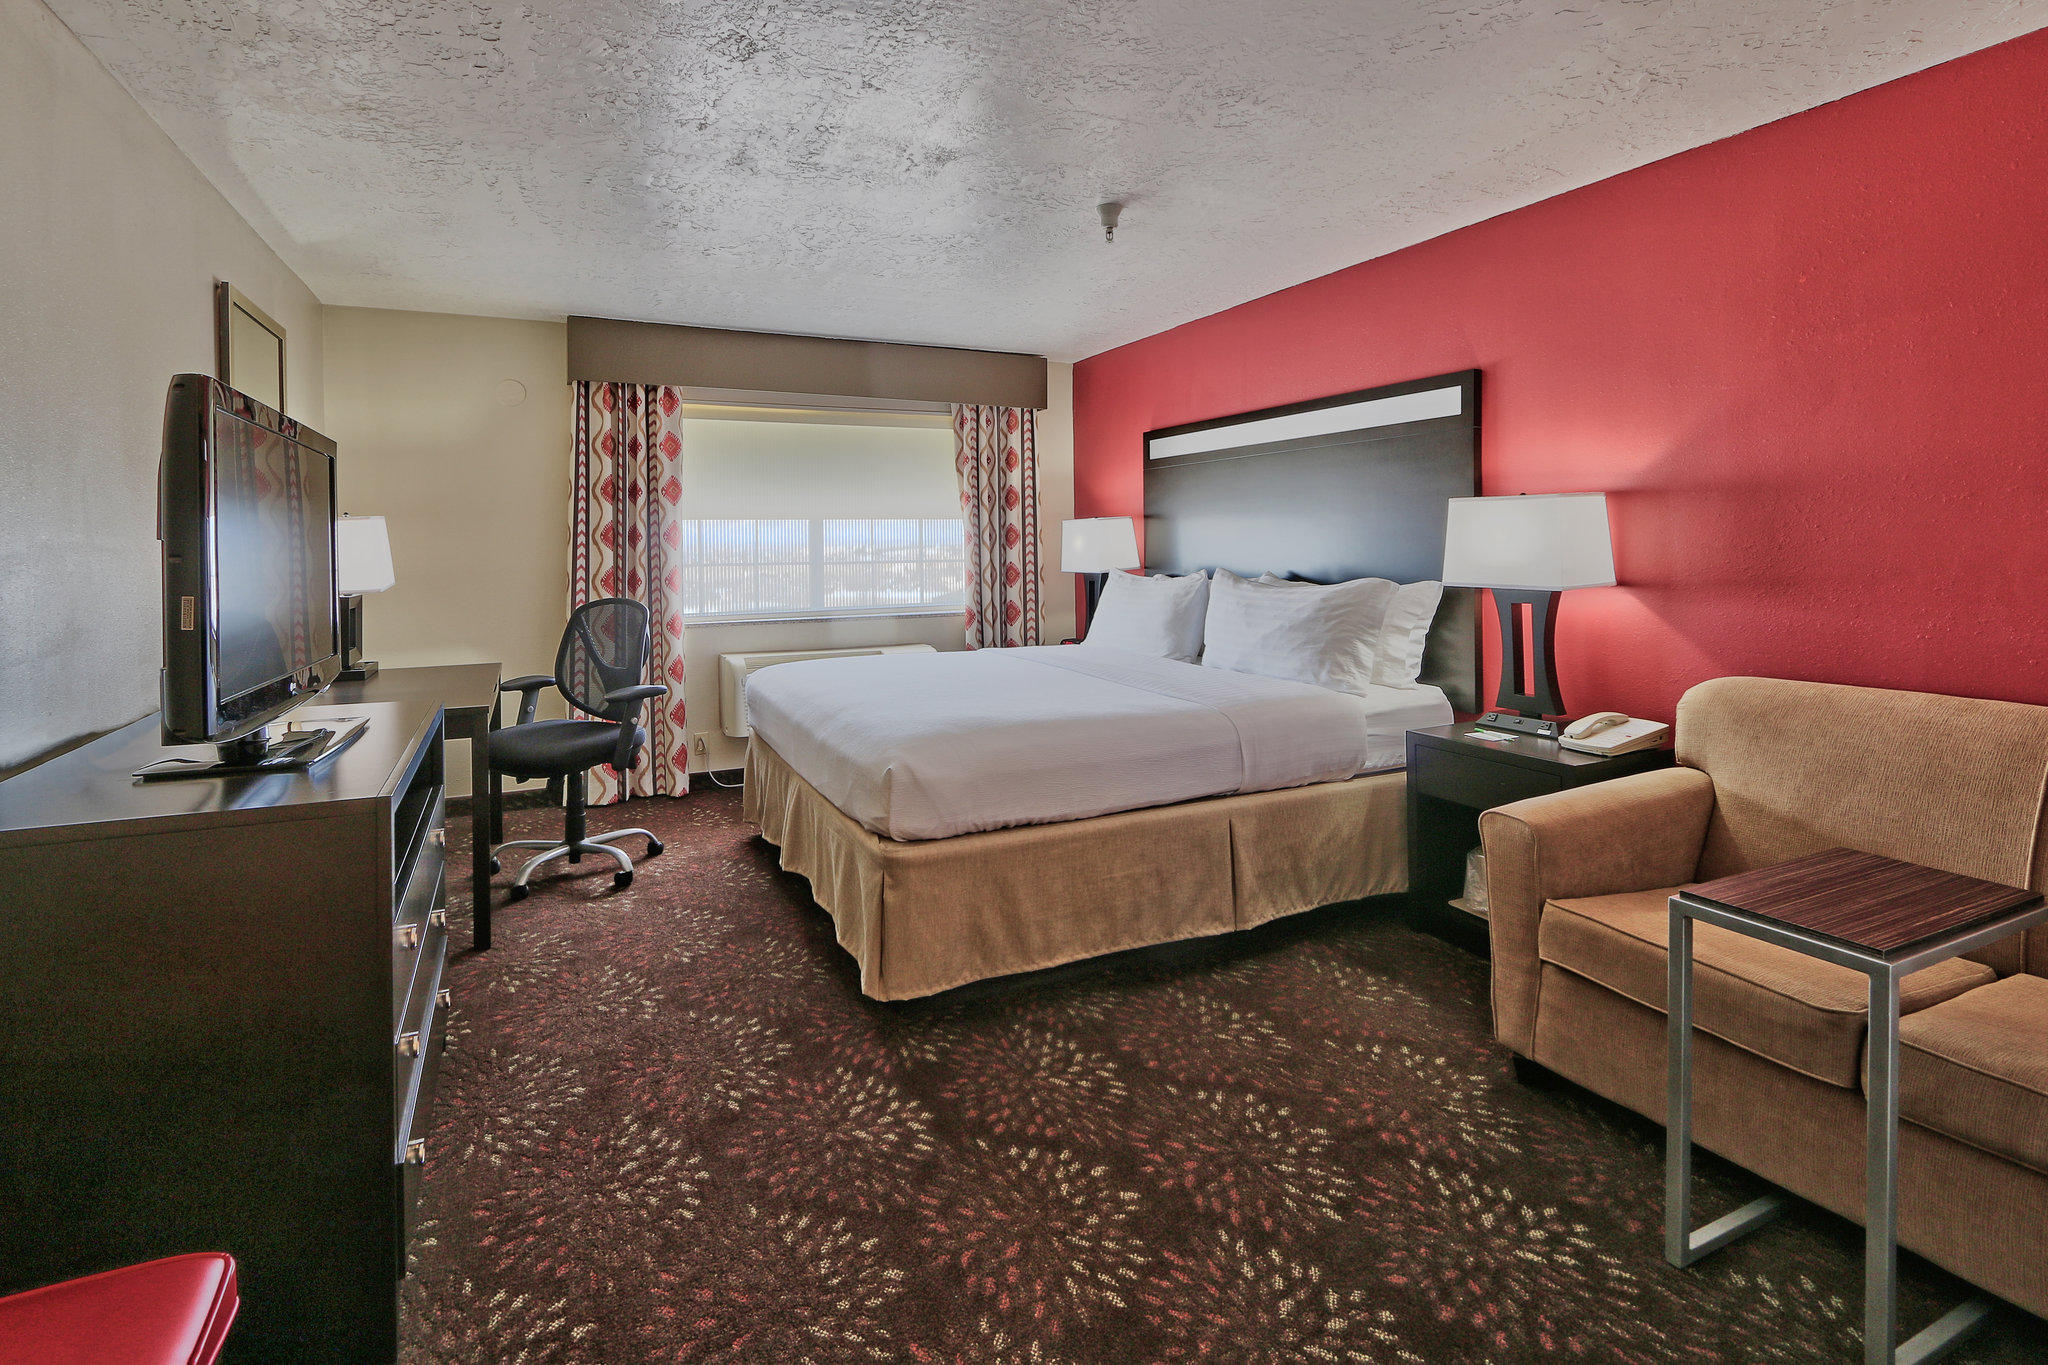 Holiday Inn & Suites Albuquerque Airport Photo